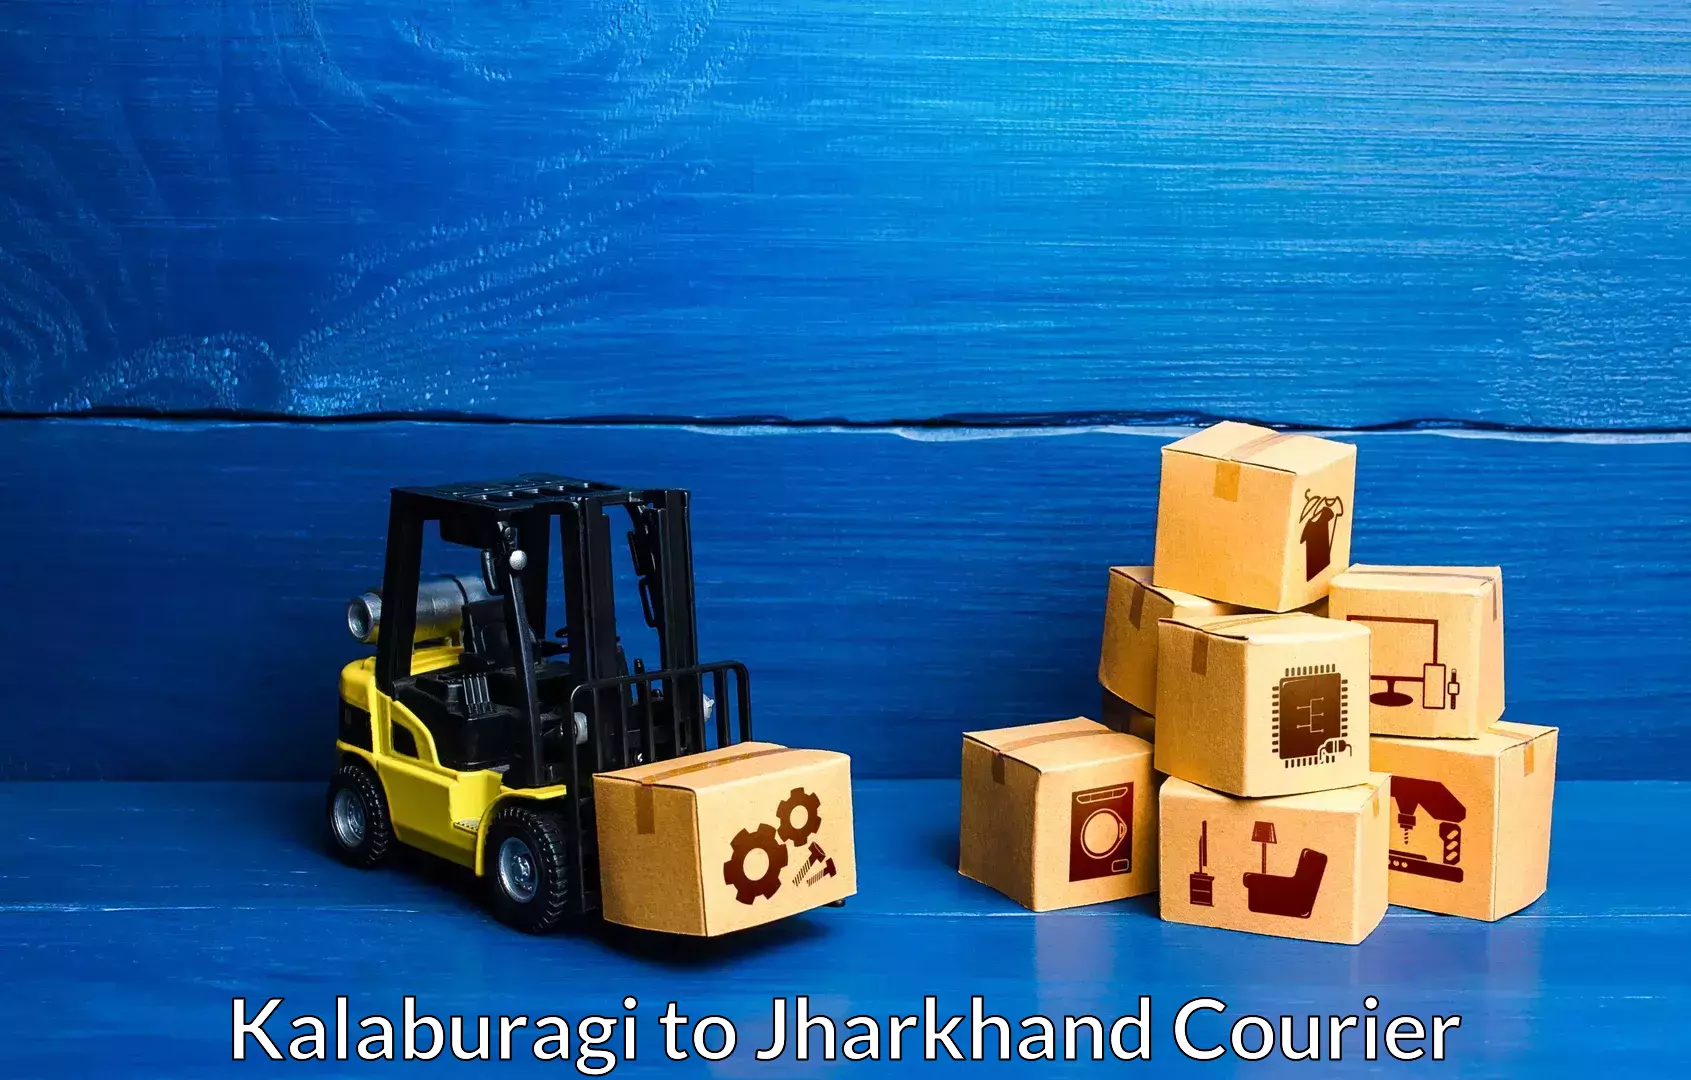 Furniture transport experts Kalaburagi to Chandwa